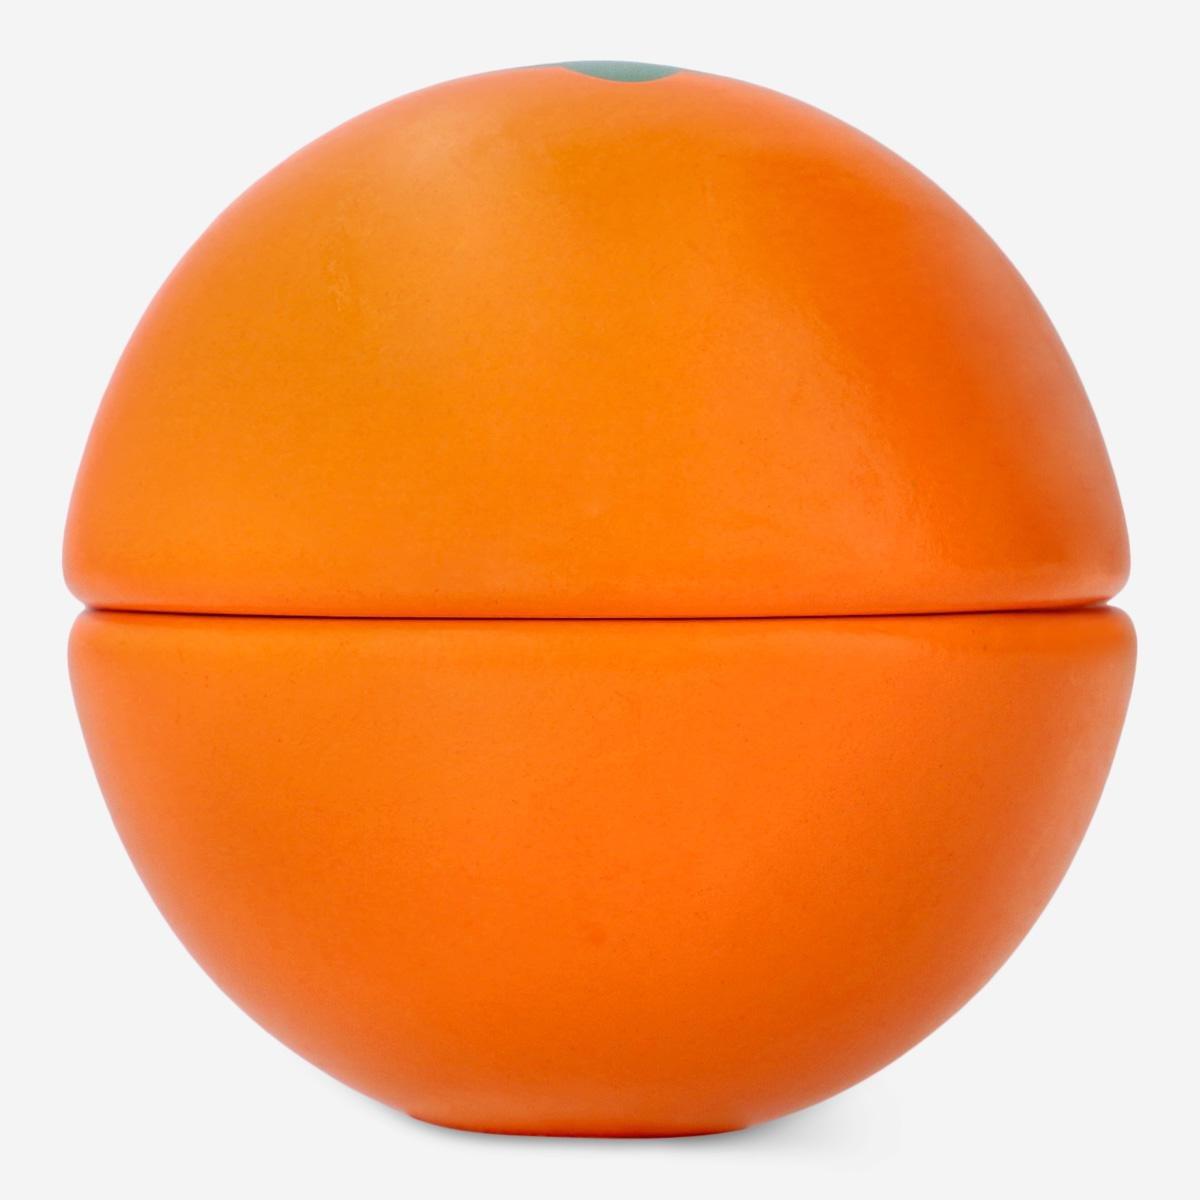 Orange wooden orange.